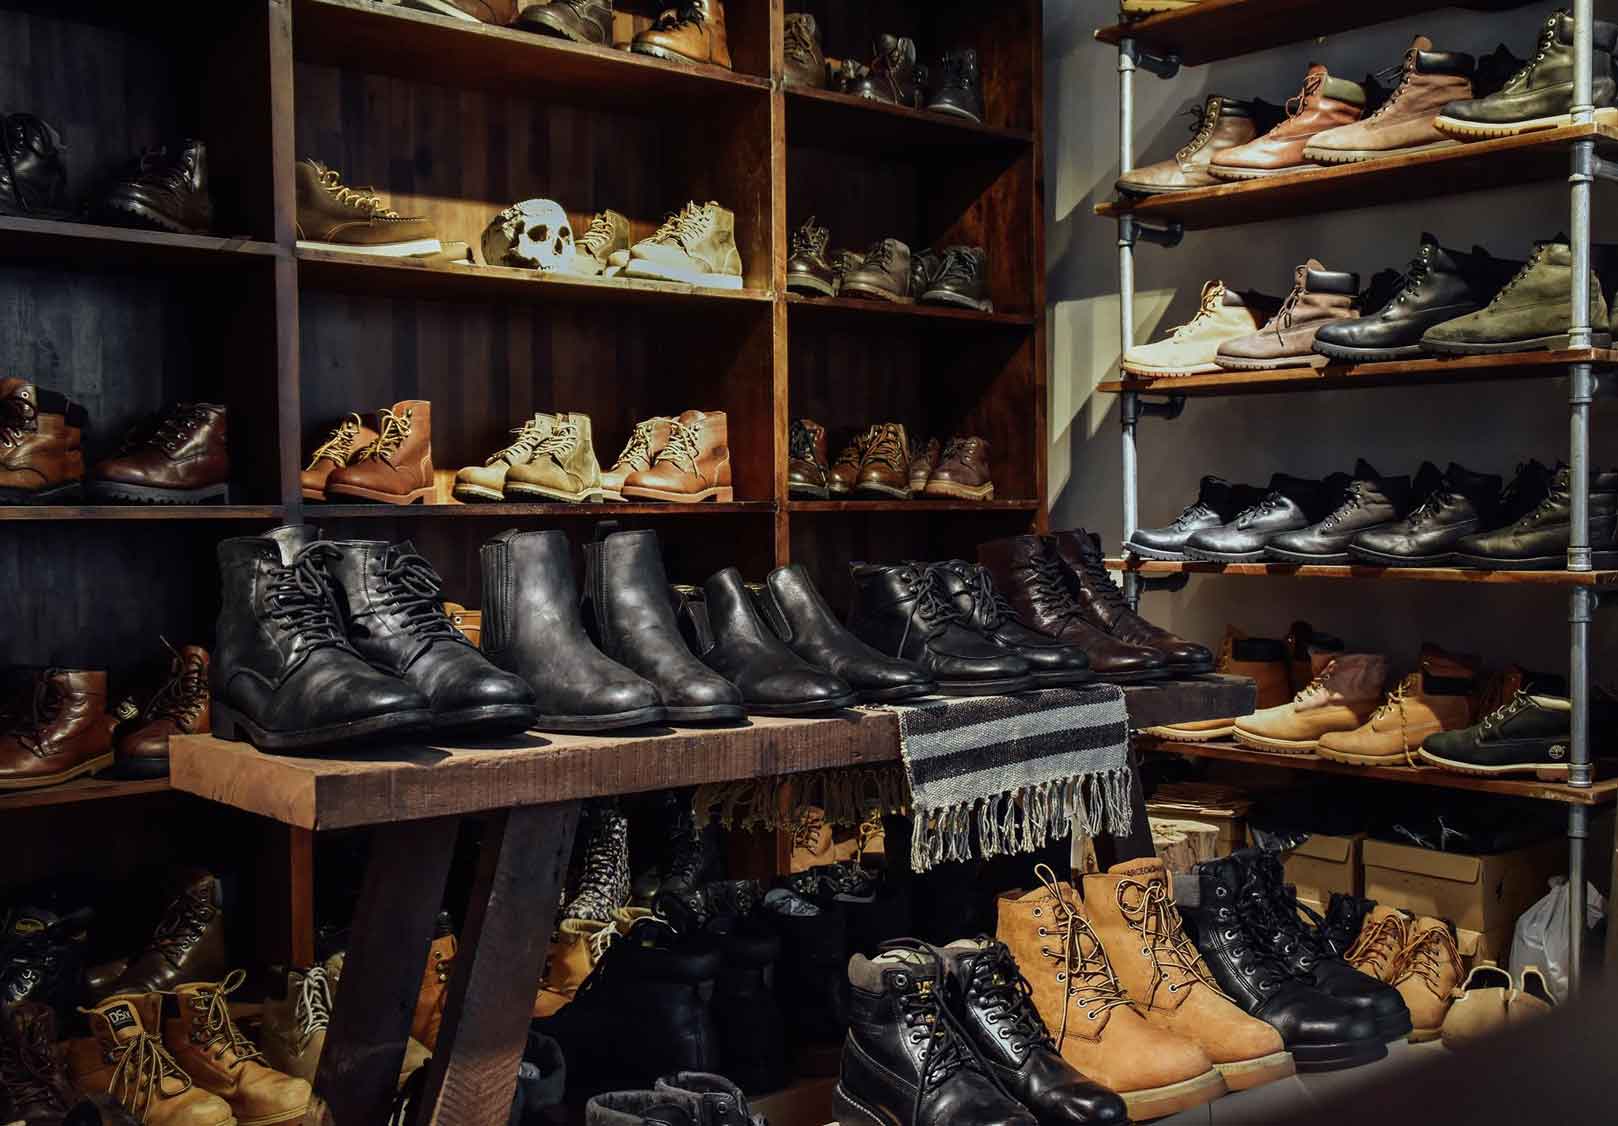 Deerus tiệm giày da cũ ở Sài Gòn mà người chơi hệ “vintage”